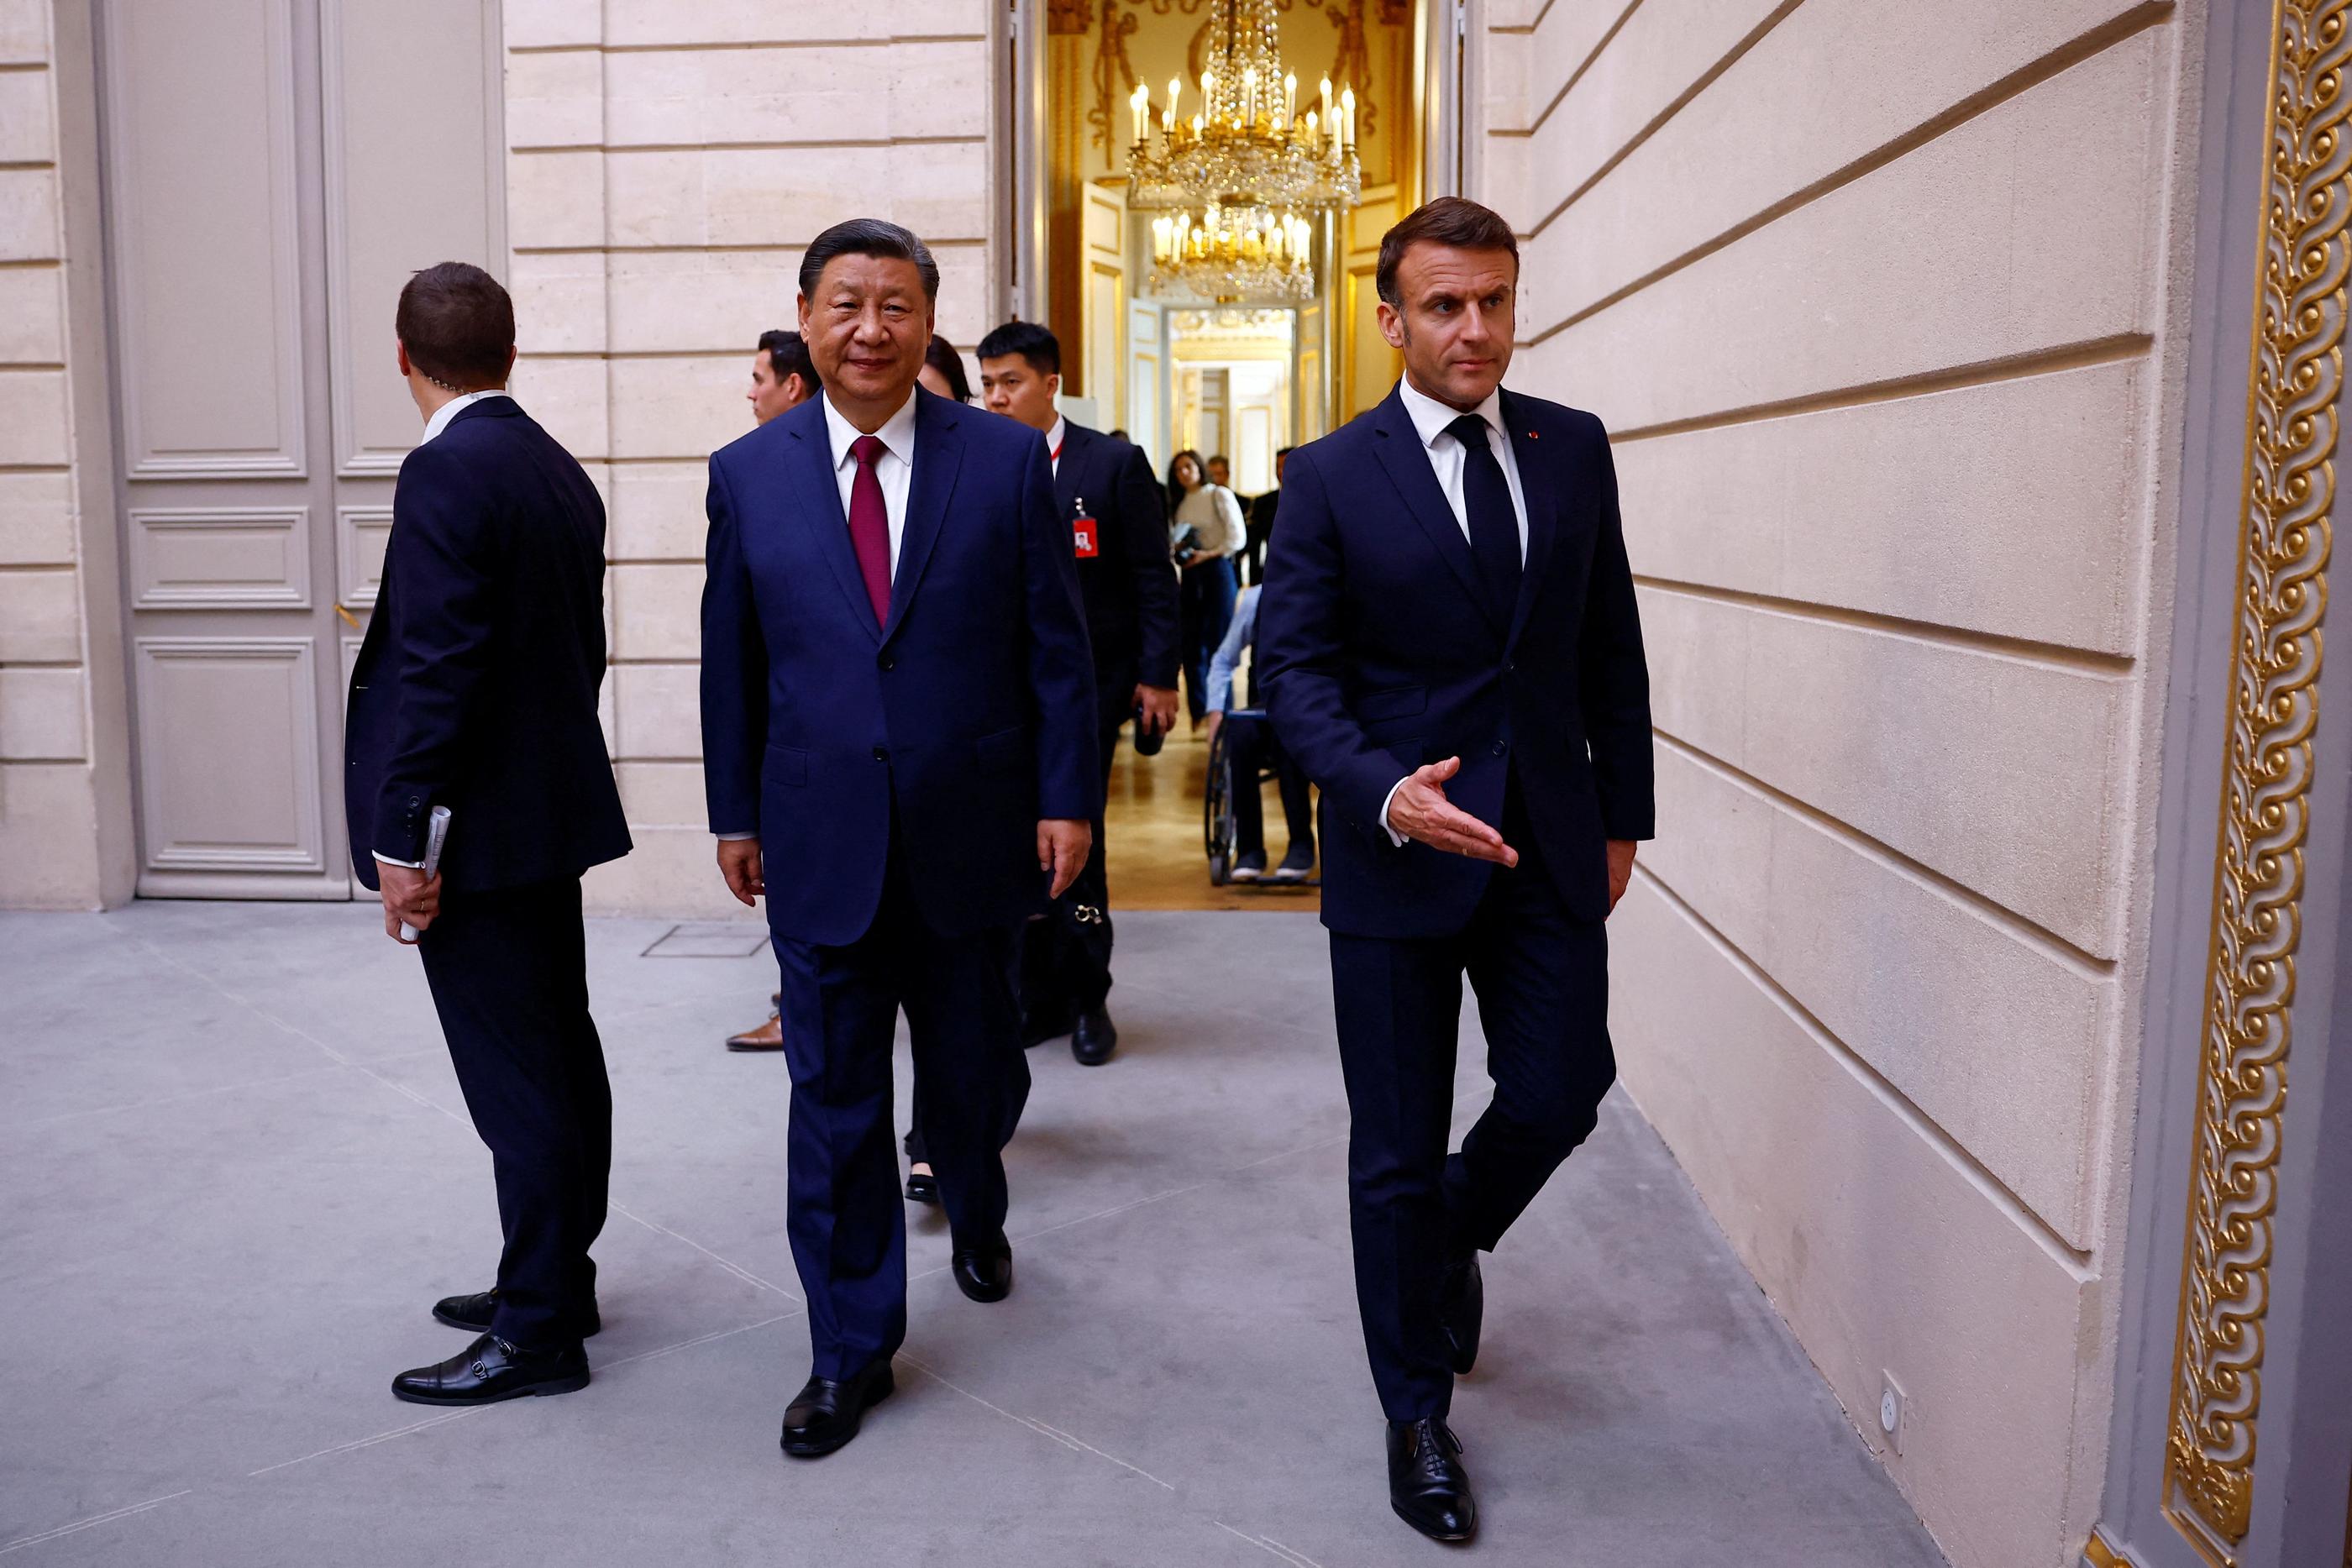 Le président chinois Xi Jinping est actuellement en visite en France. AFP / SARAH MEYSSONNIER